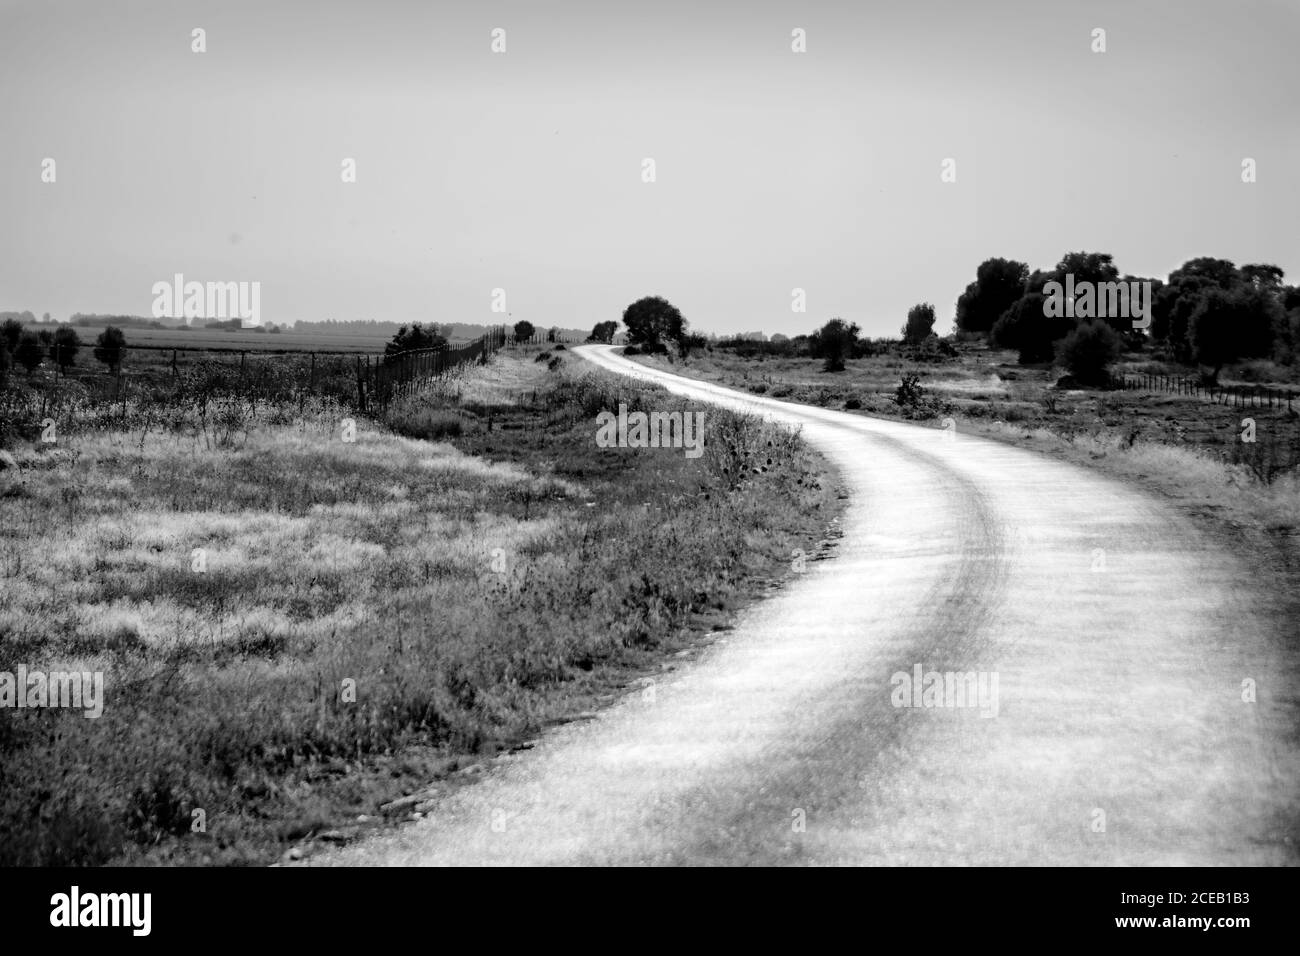 paysage de la route rurale curvy traversant des terres couvertes de herbe luxuriante et arbres sur fond de ciel clair dedans noir et blanc Banque D'Images